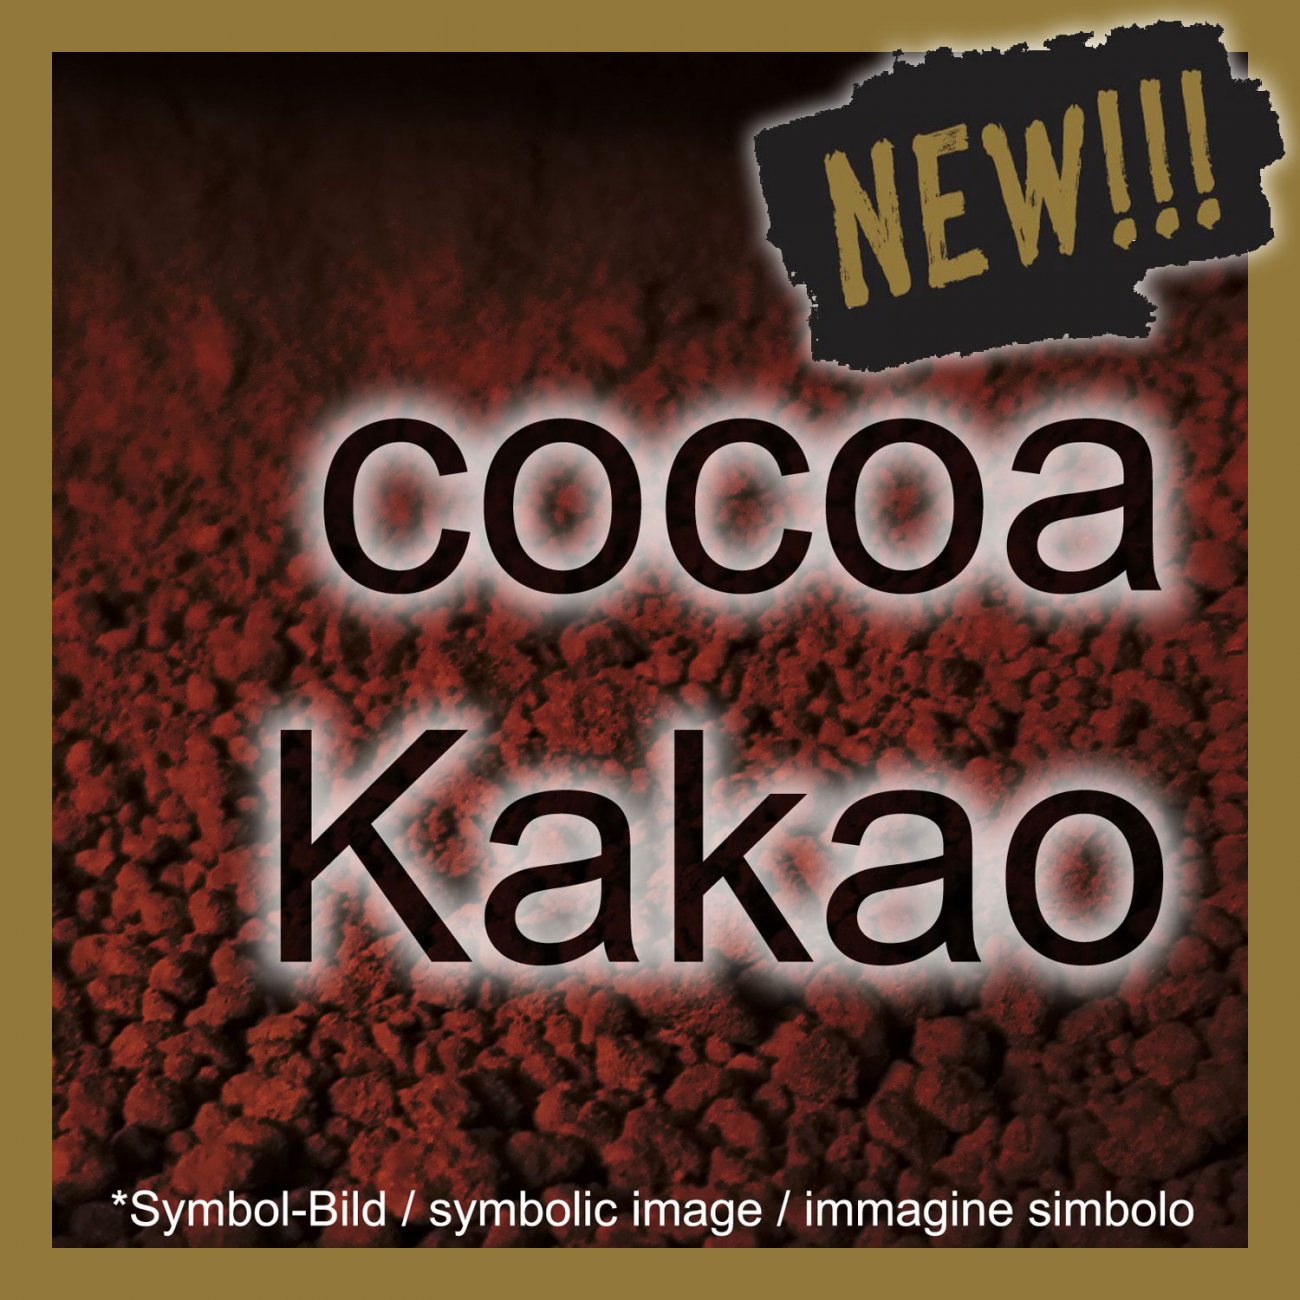 Kakao Pulver BLACK DUTCH 10/12 (cacao in polvere) - Beutel 2 kg